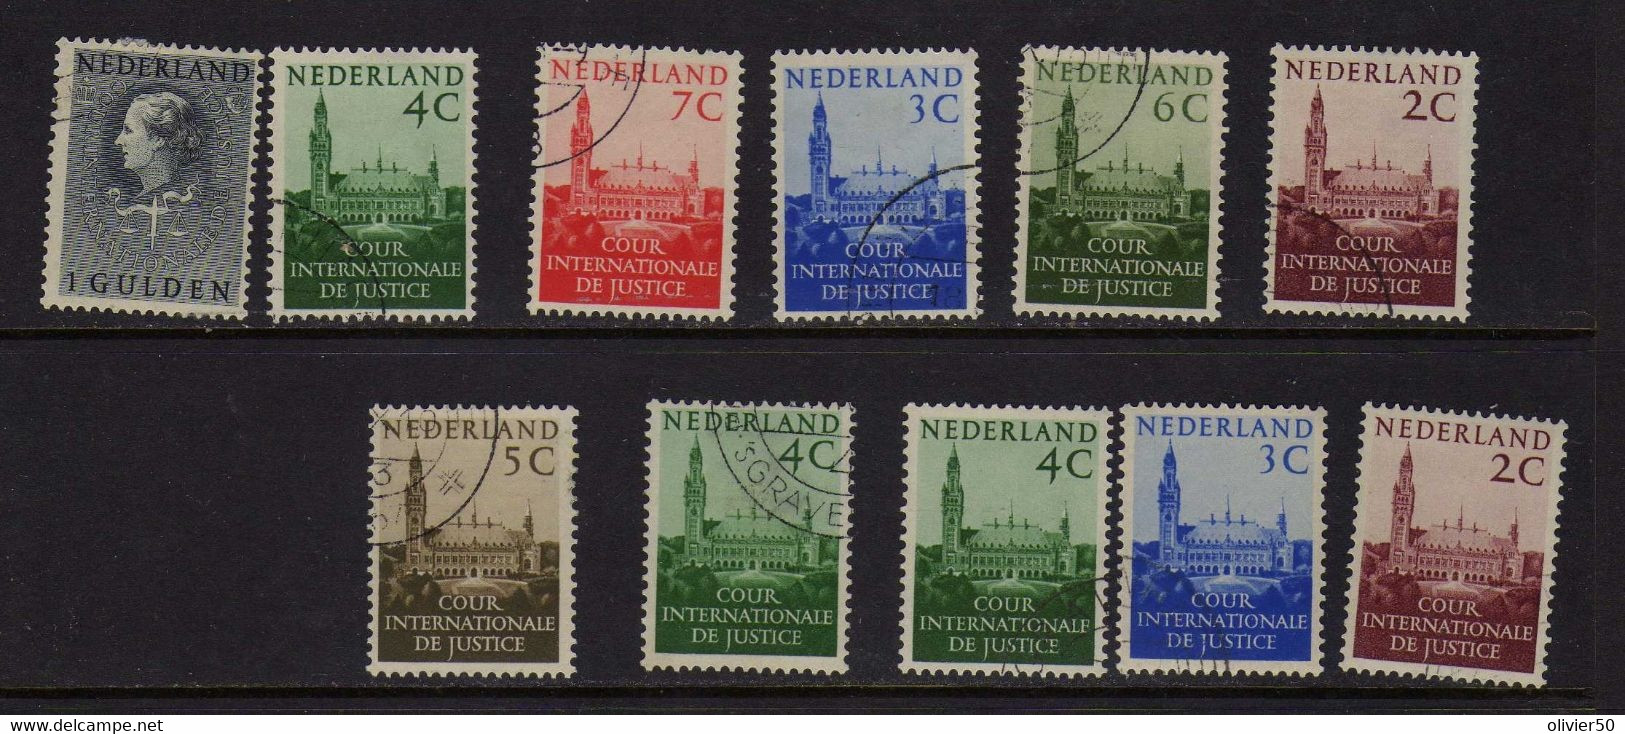 Pays-Bas (1951-58)  - Timbres De Service  Oblit - Dienstzegels